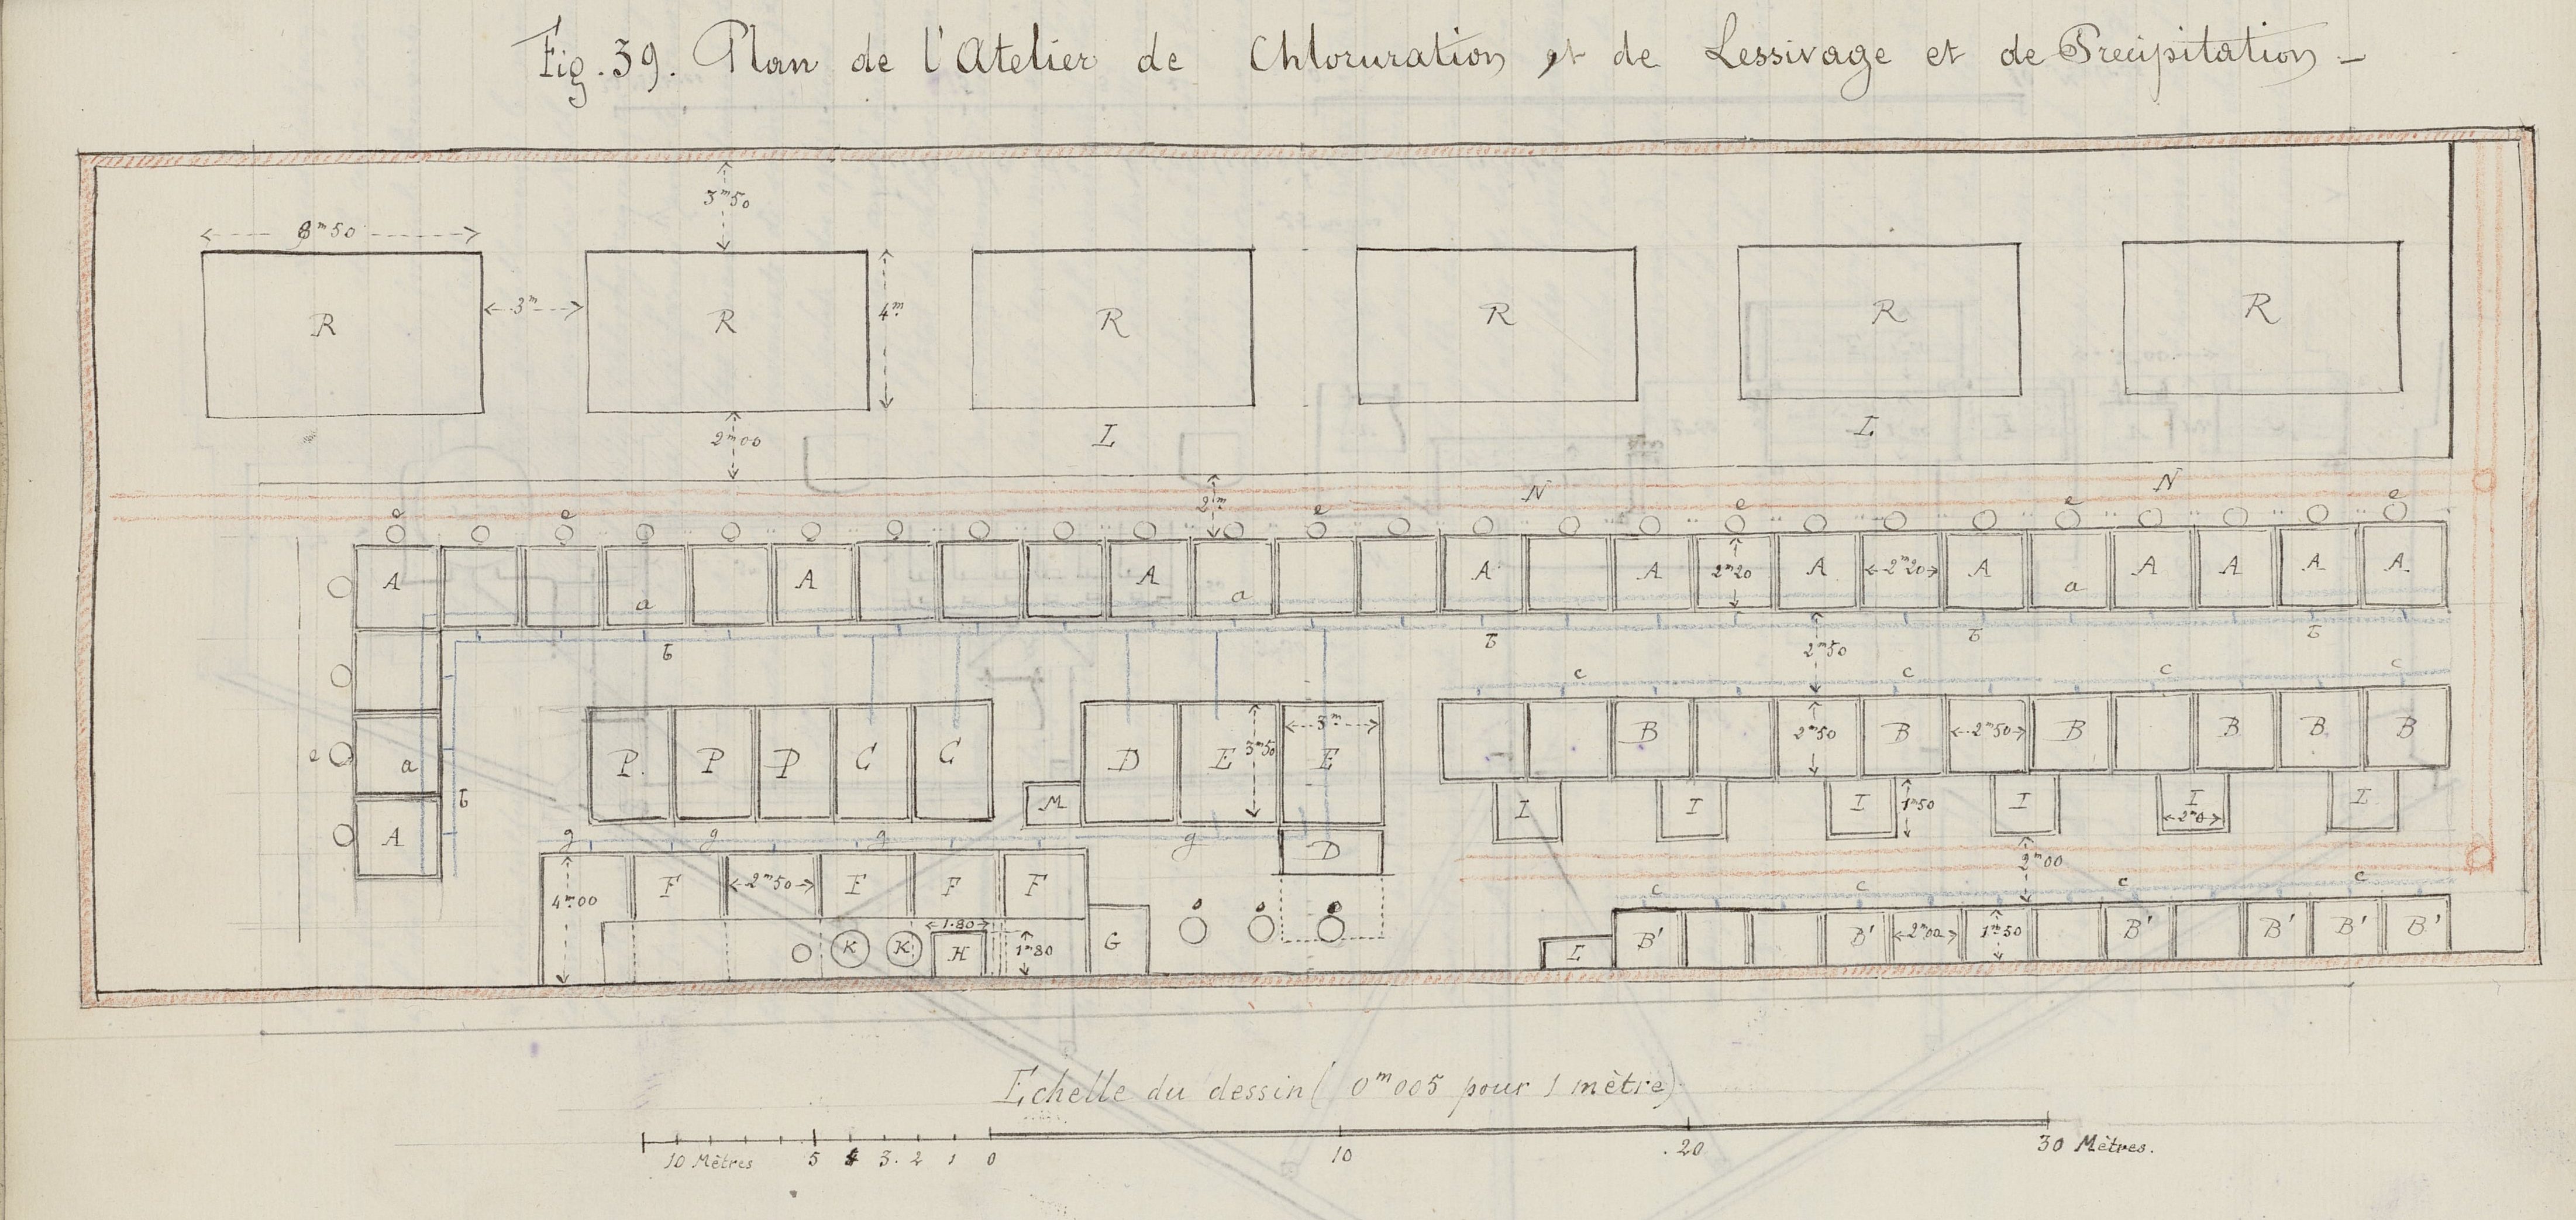 Plan de l’atelier de Falun, Charles Lallemand, 1879, M 1879 (1002)